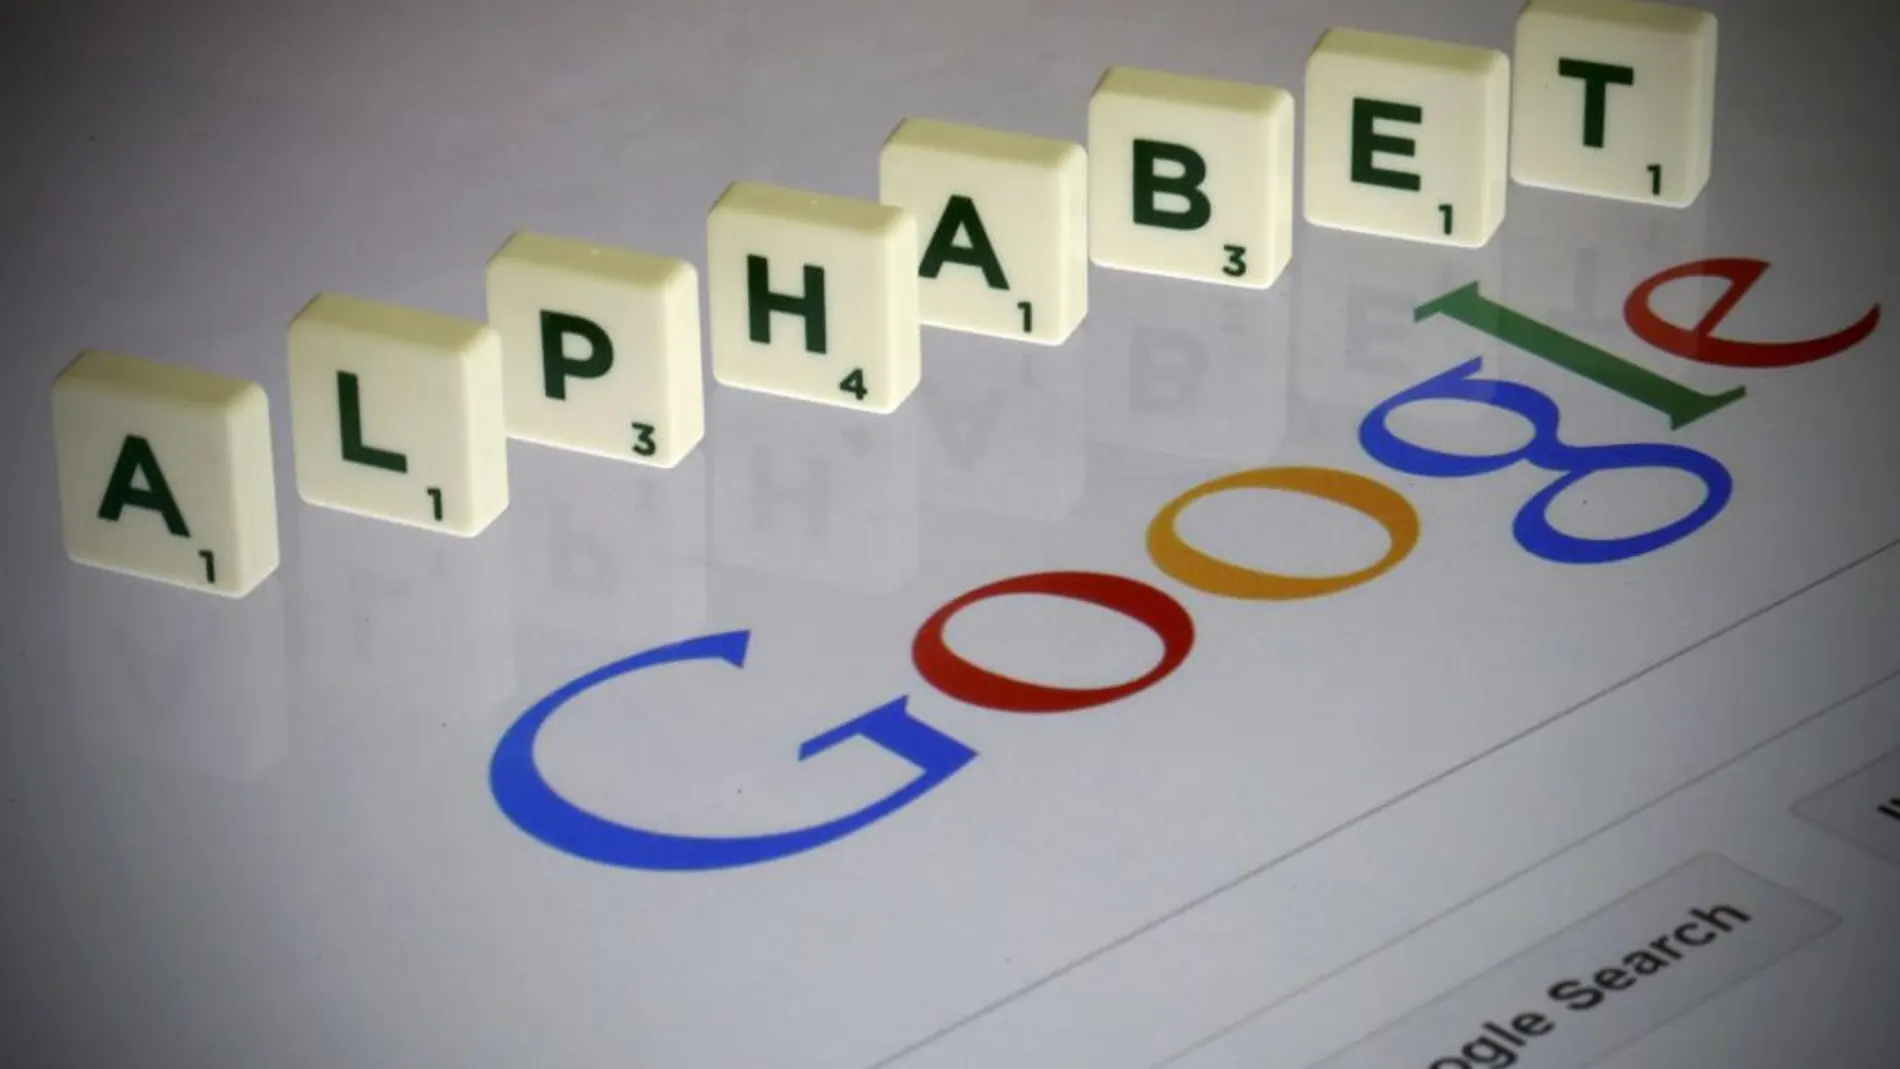 Alphabet es la empresa matriz de Google